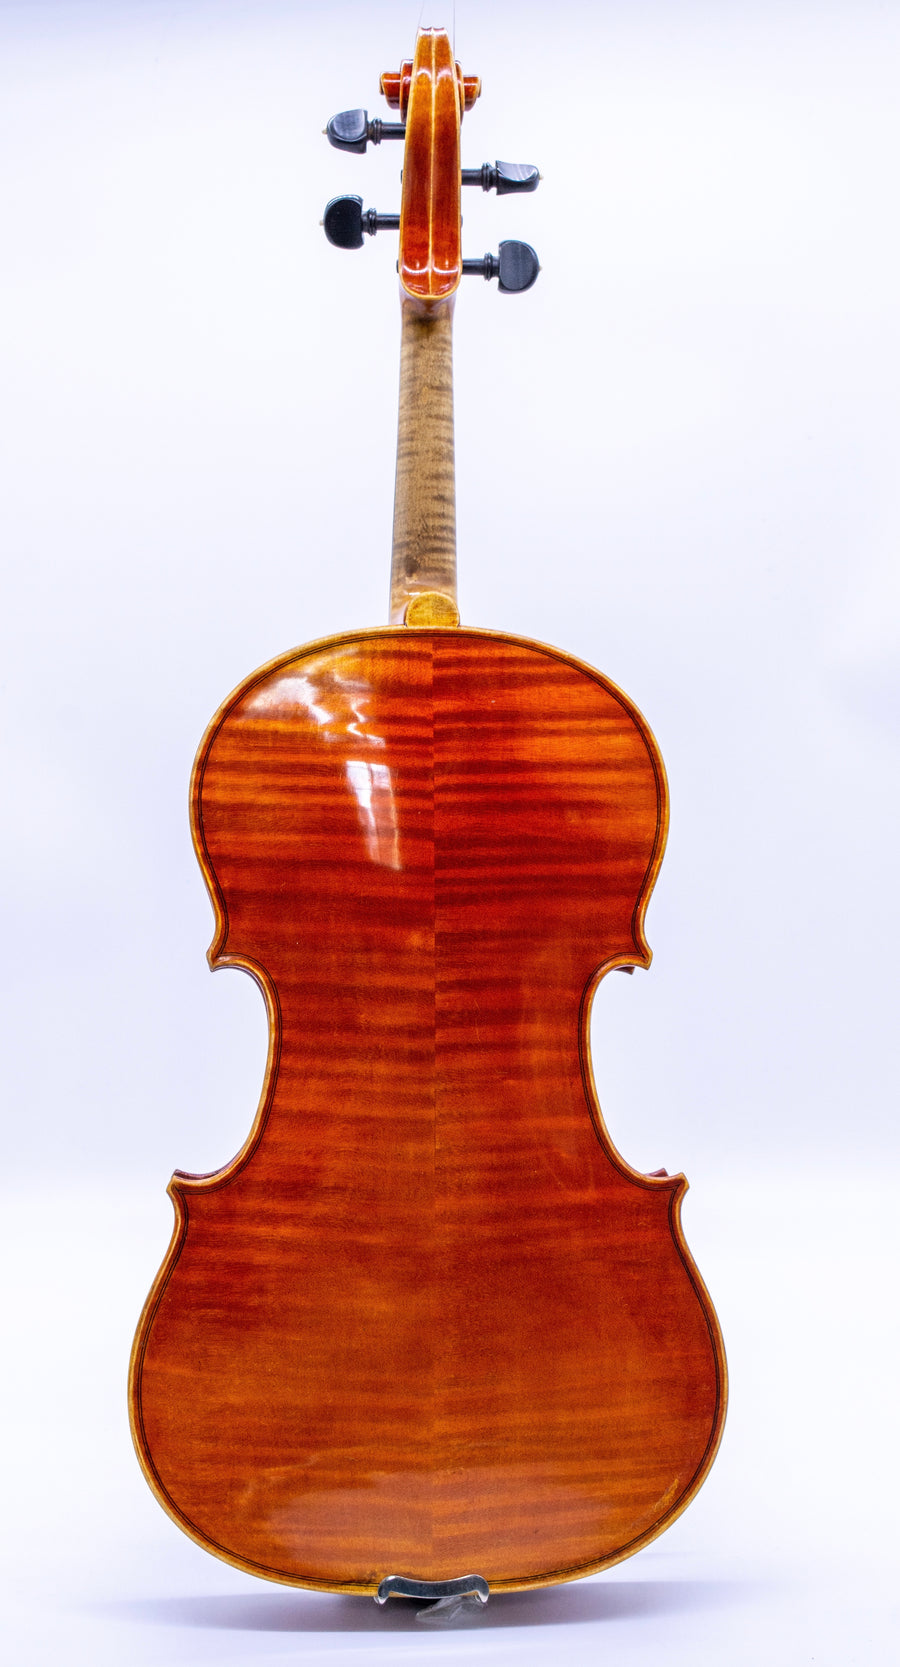 A Fine Viola by Leo Aschauer; Mittenwald, 1955. 16”